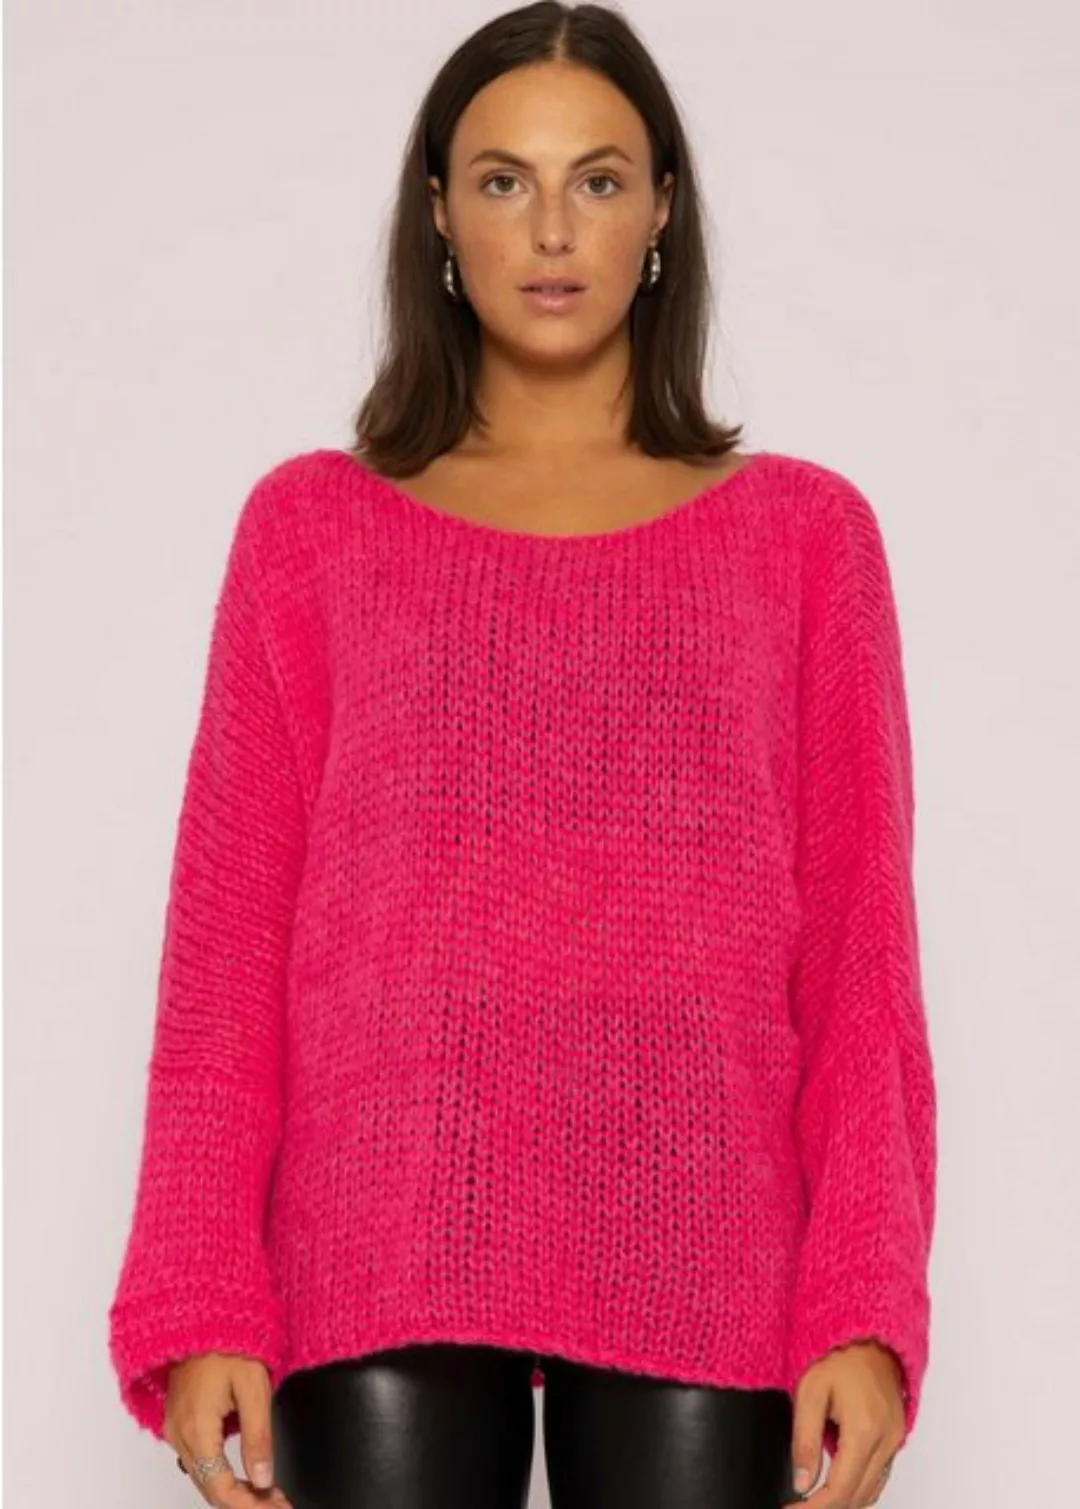 SASSYCLASSY Strickpullover Oversize Pullover Damen aus weichem Grobstrick L günstig online kaufen